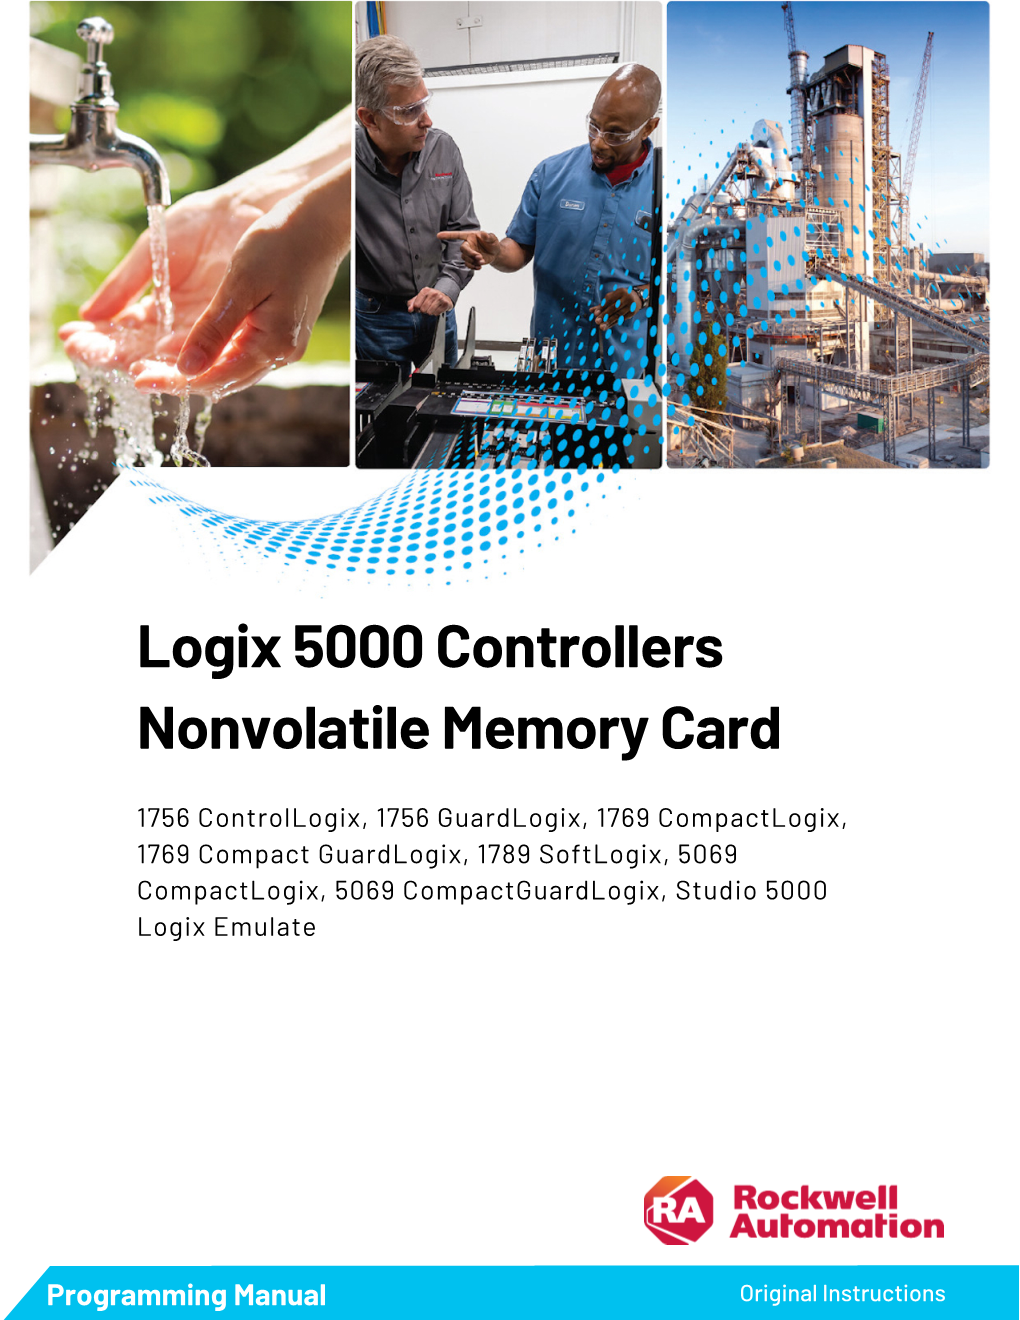 Logix 5000 Controllers Nonvolatile Memory Card, 1756-PM017I-EN-P